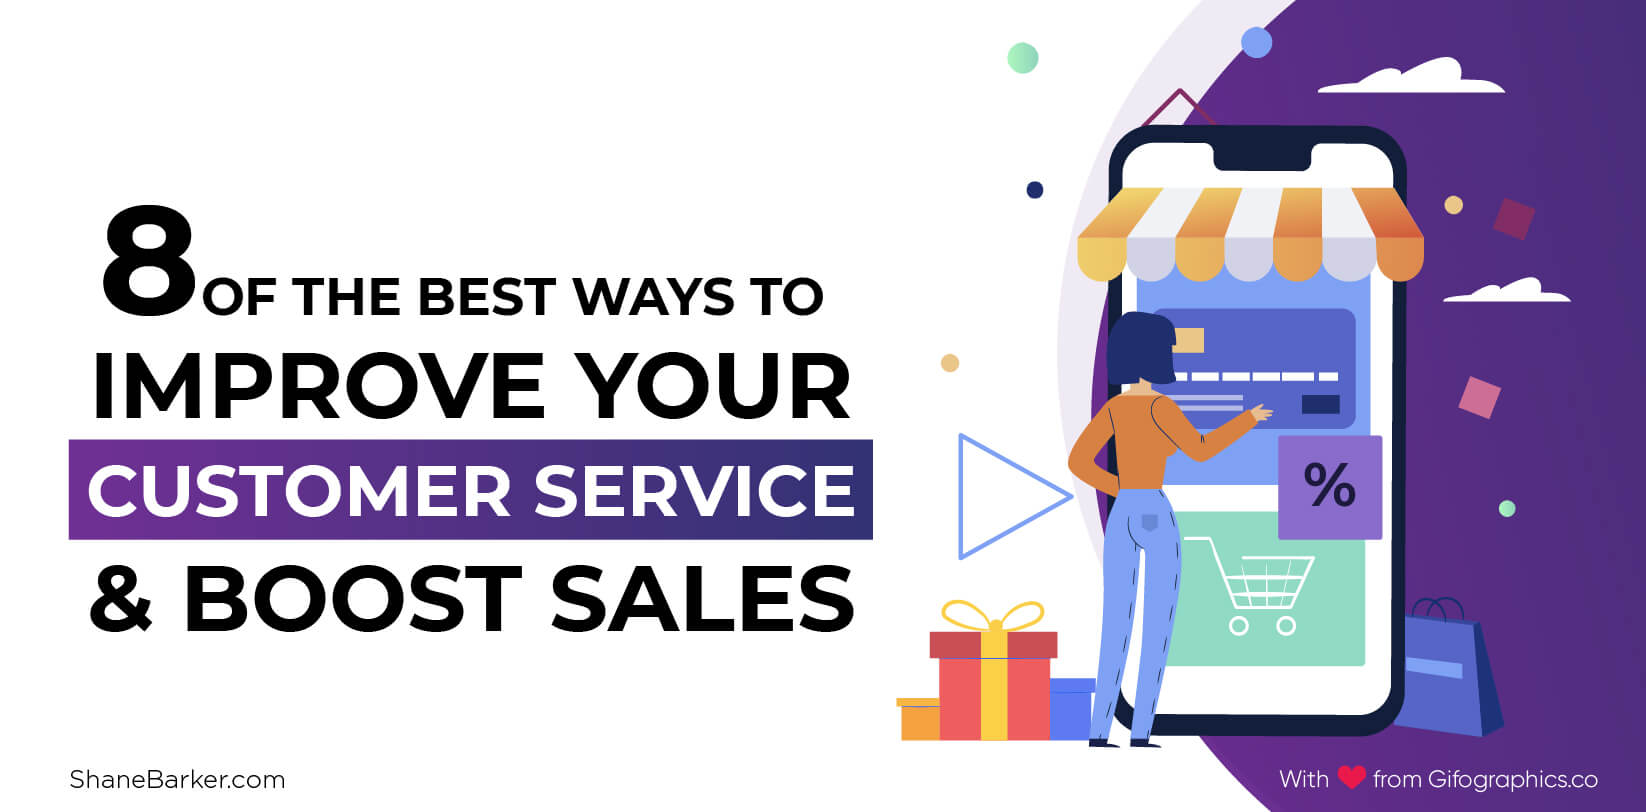 改善客户服务和促进销售的 8 种最佳方法（2019 年 9 月更新）